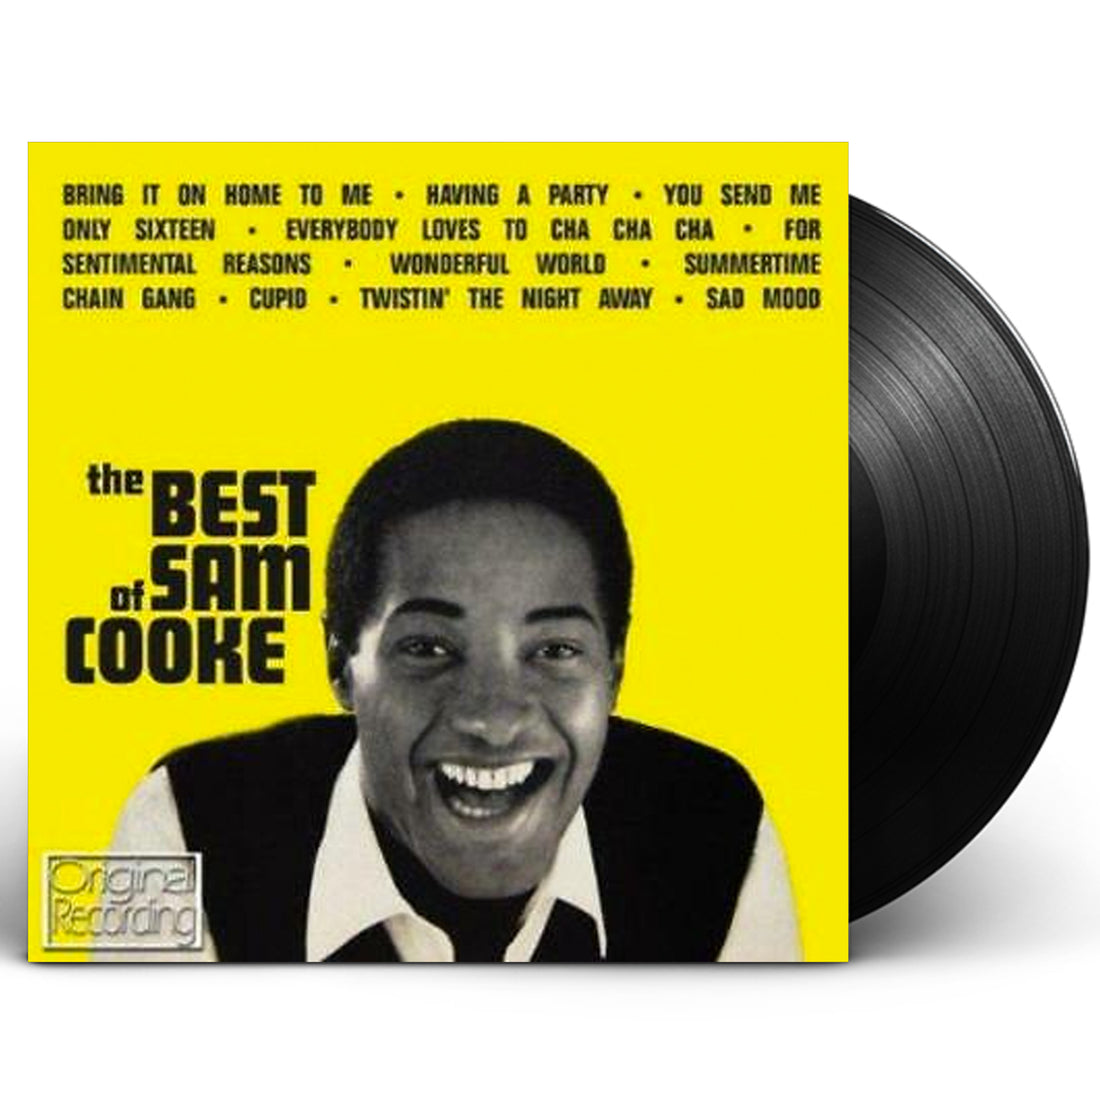 Sam Cooke "The Best Of Sam Cooke" LP Vinyl